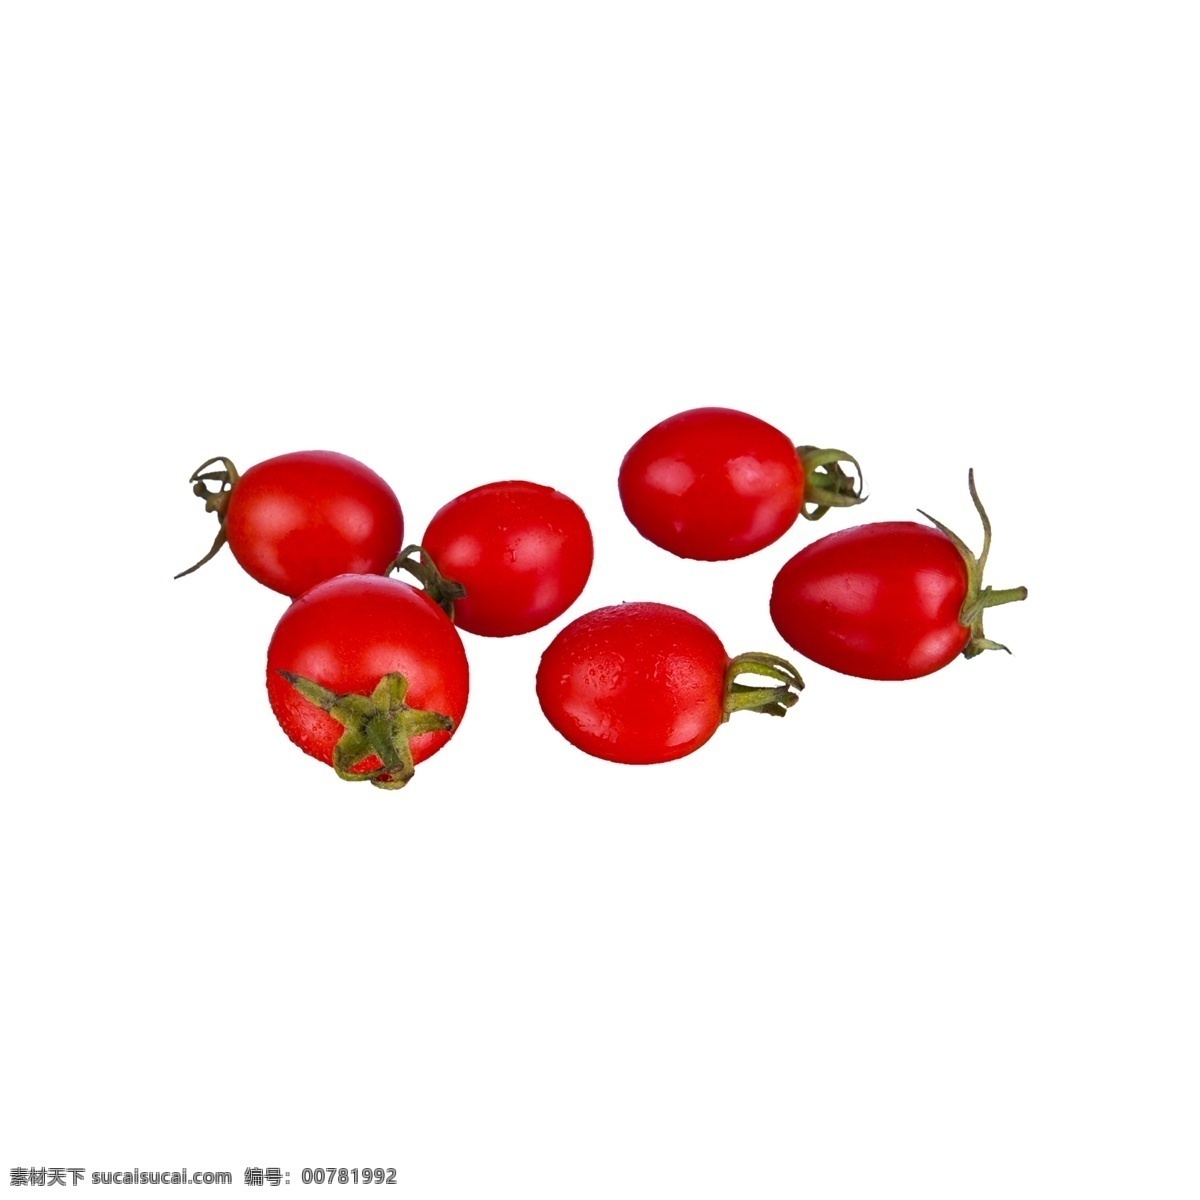 小 番茄 实物 免 抠 小番茄 小番茄免抠 营养 蔬菜 新鲜 红色 植物 实物拍摄 摆拍 绿色叶子 酸甜